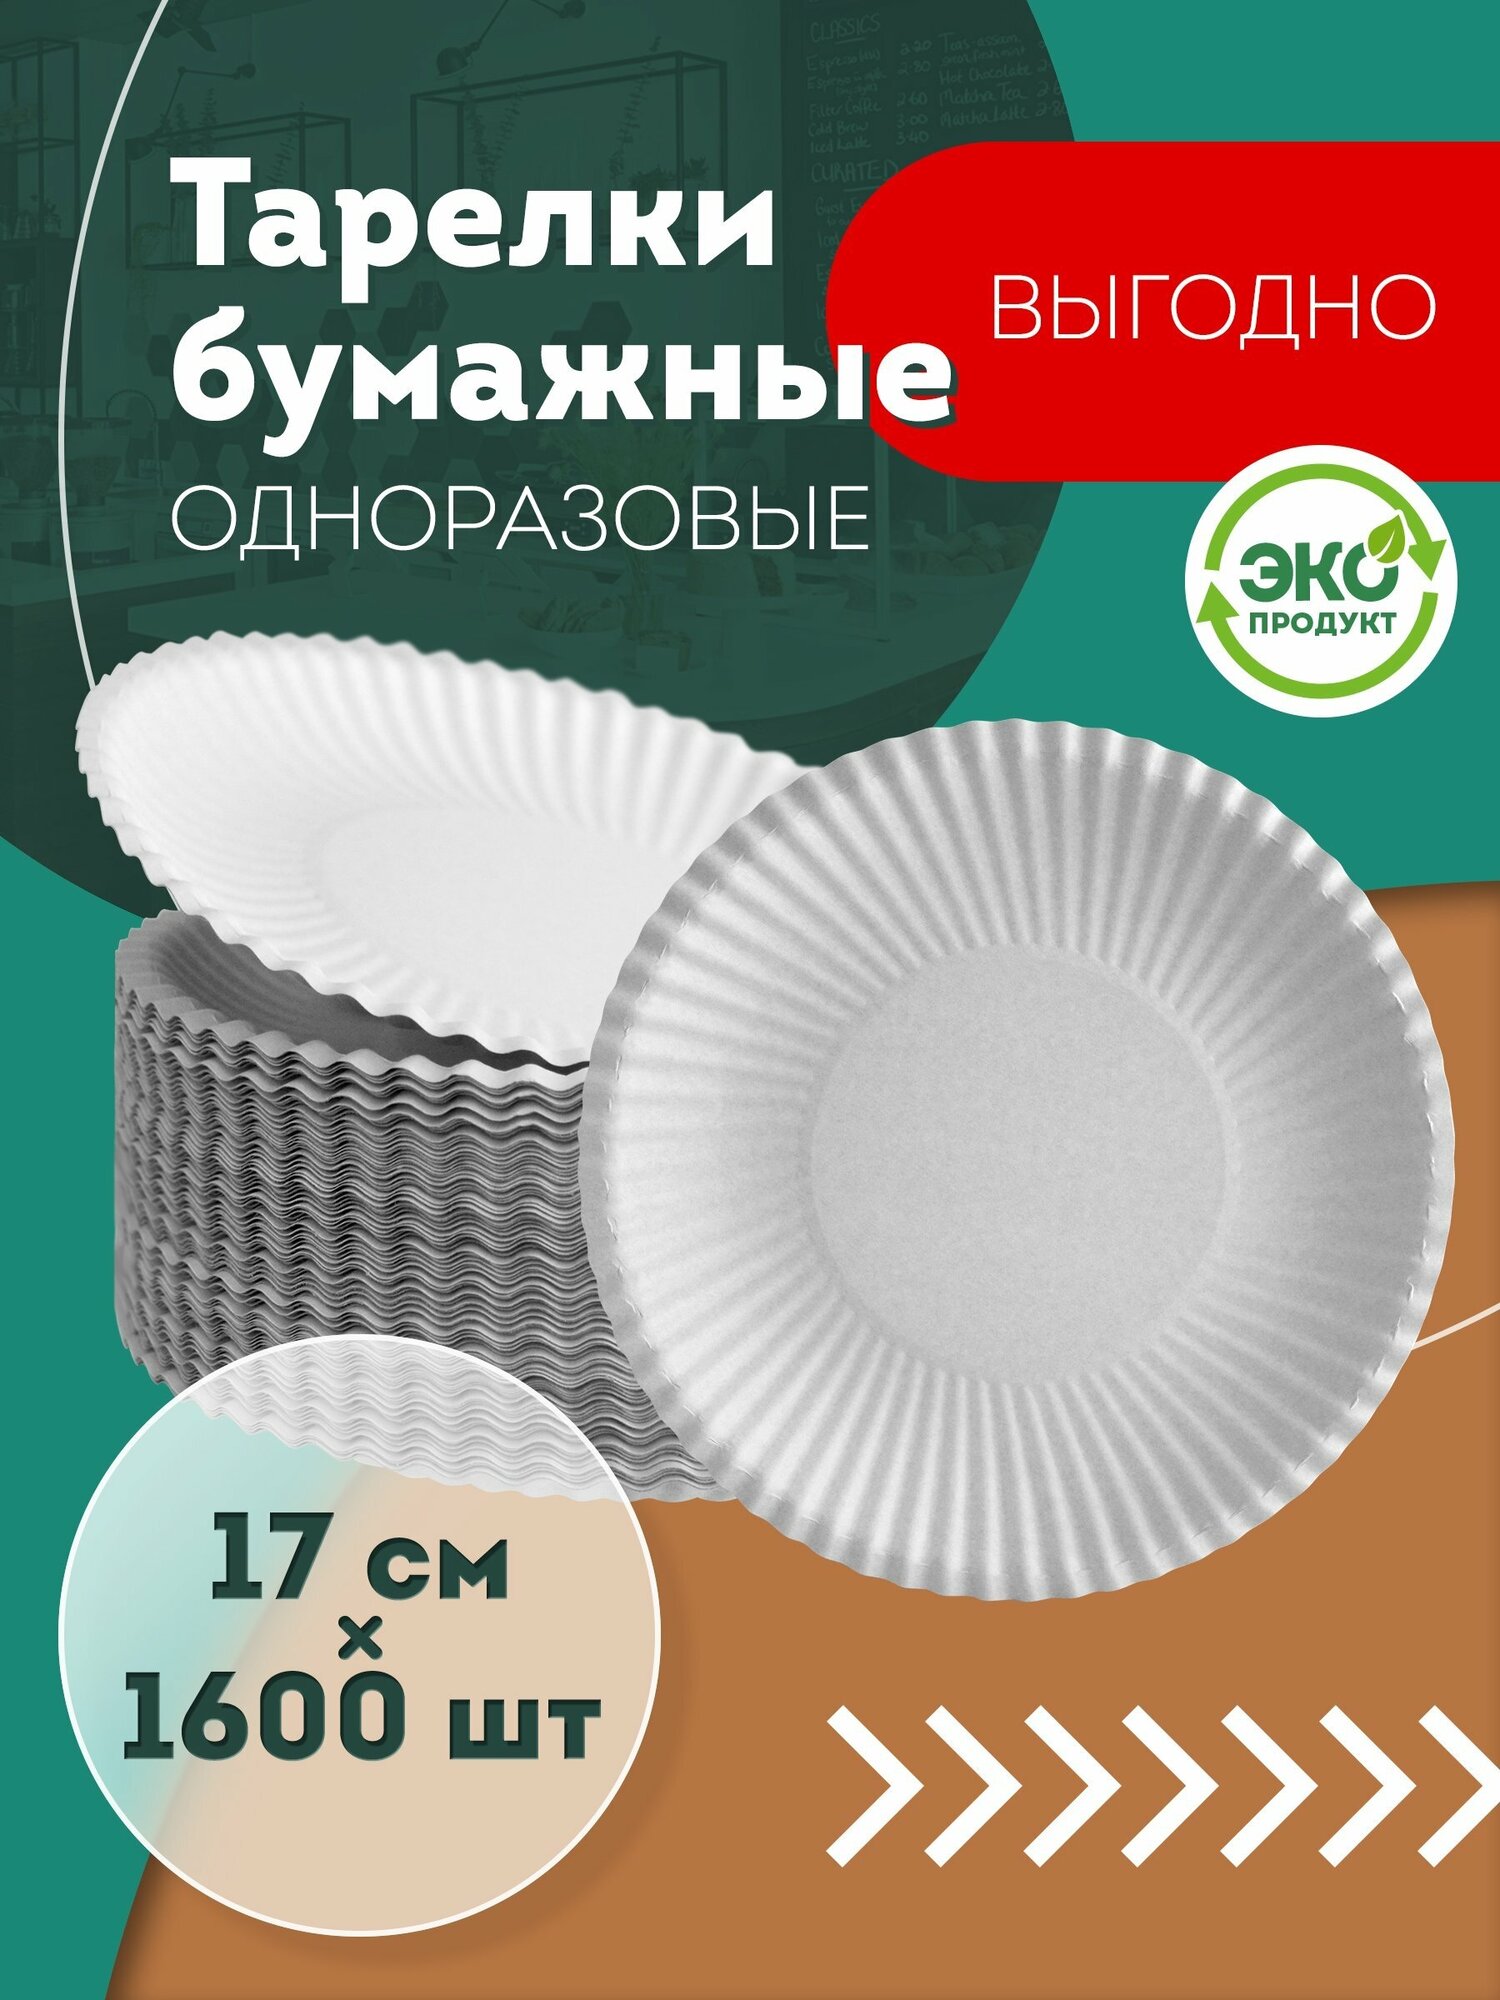 Одноразовые бумажные тарелки, белые, диаметр 170 мм, 1600 шт.